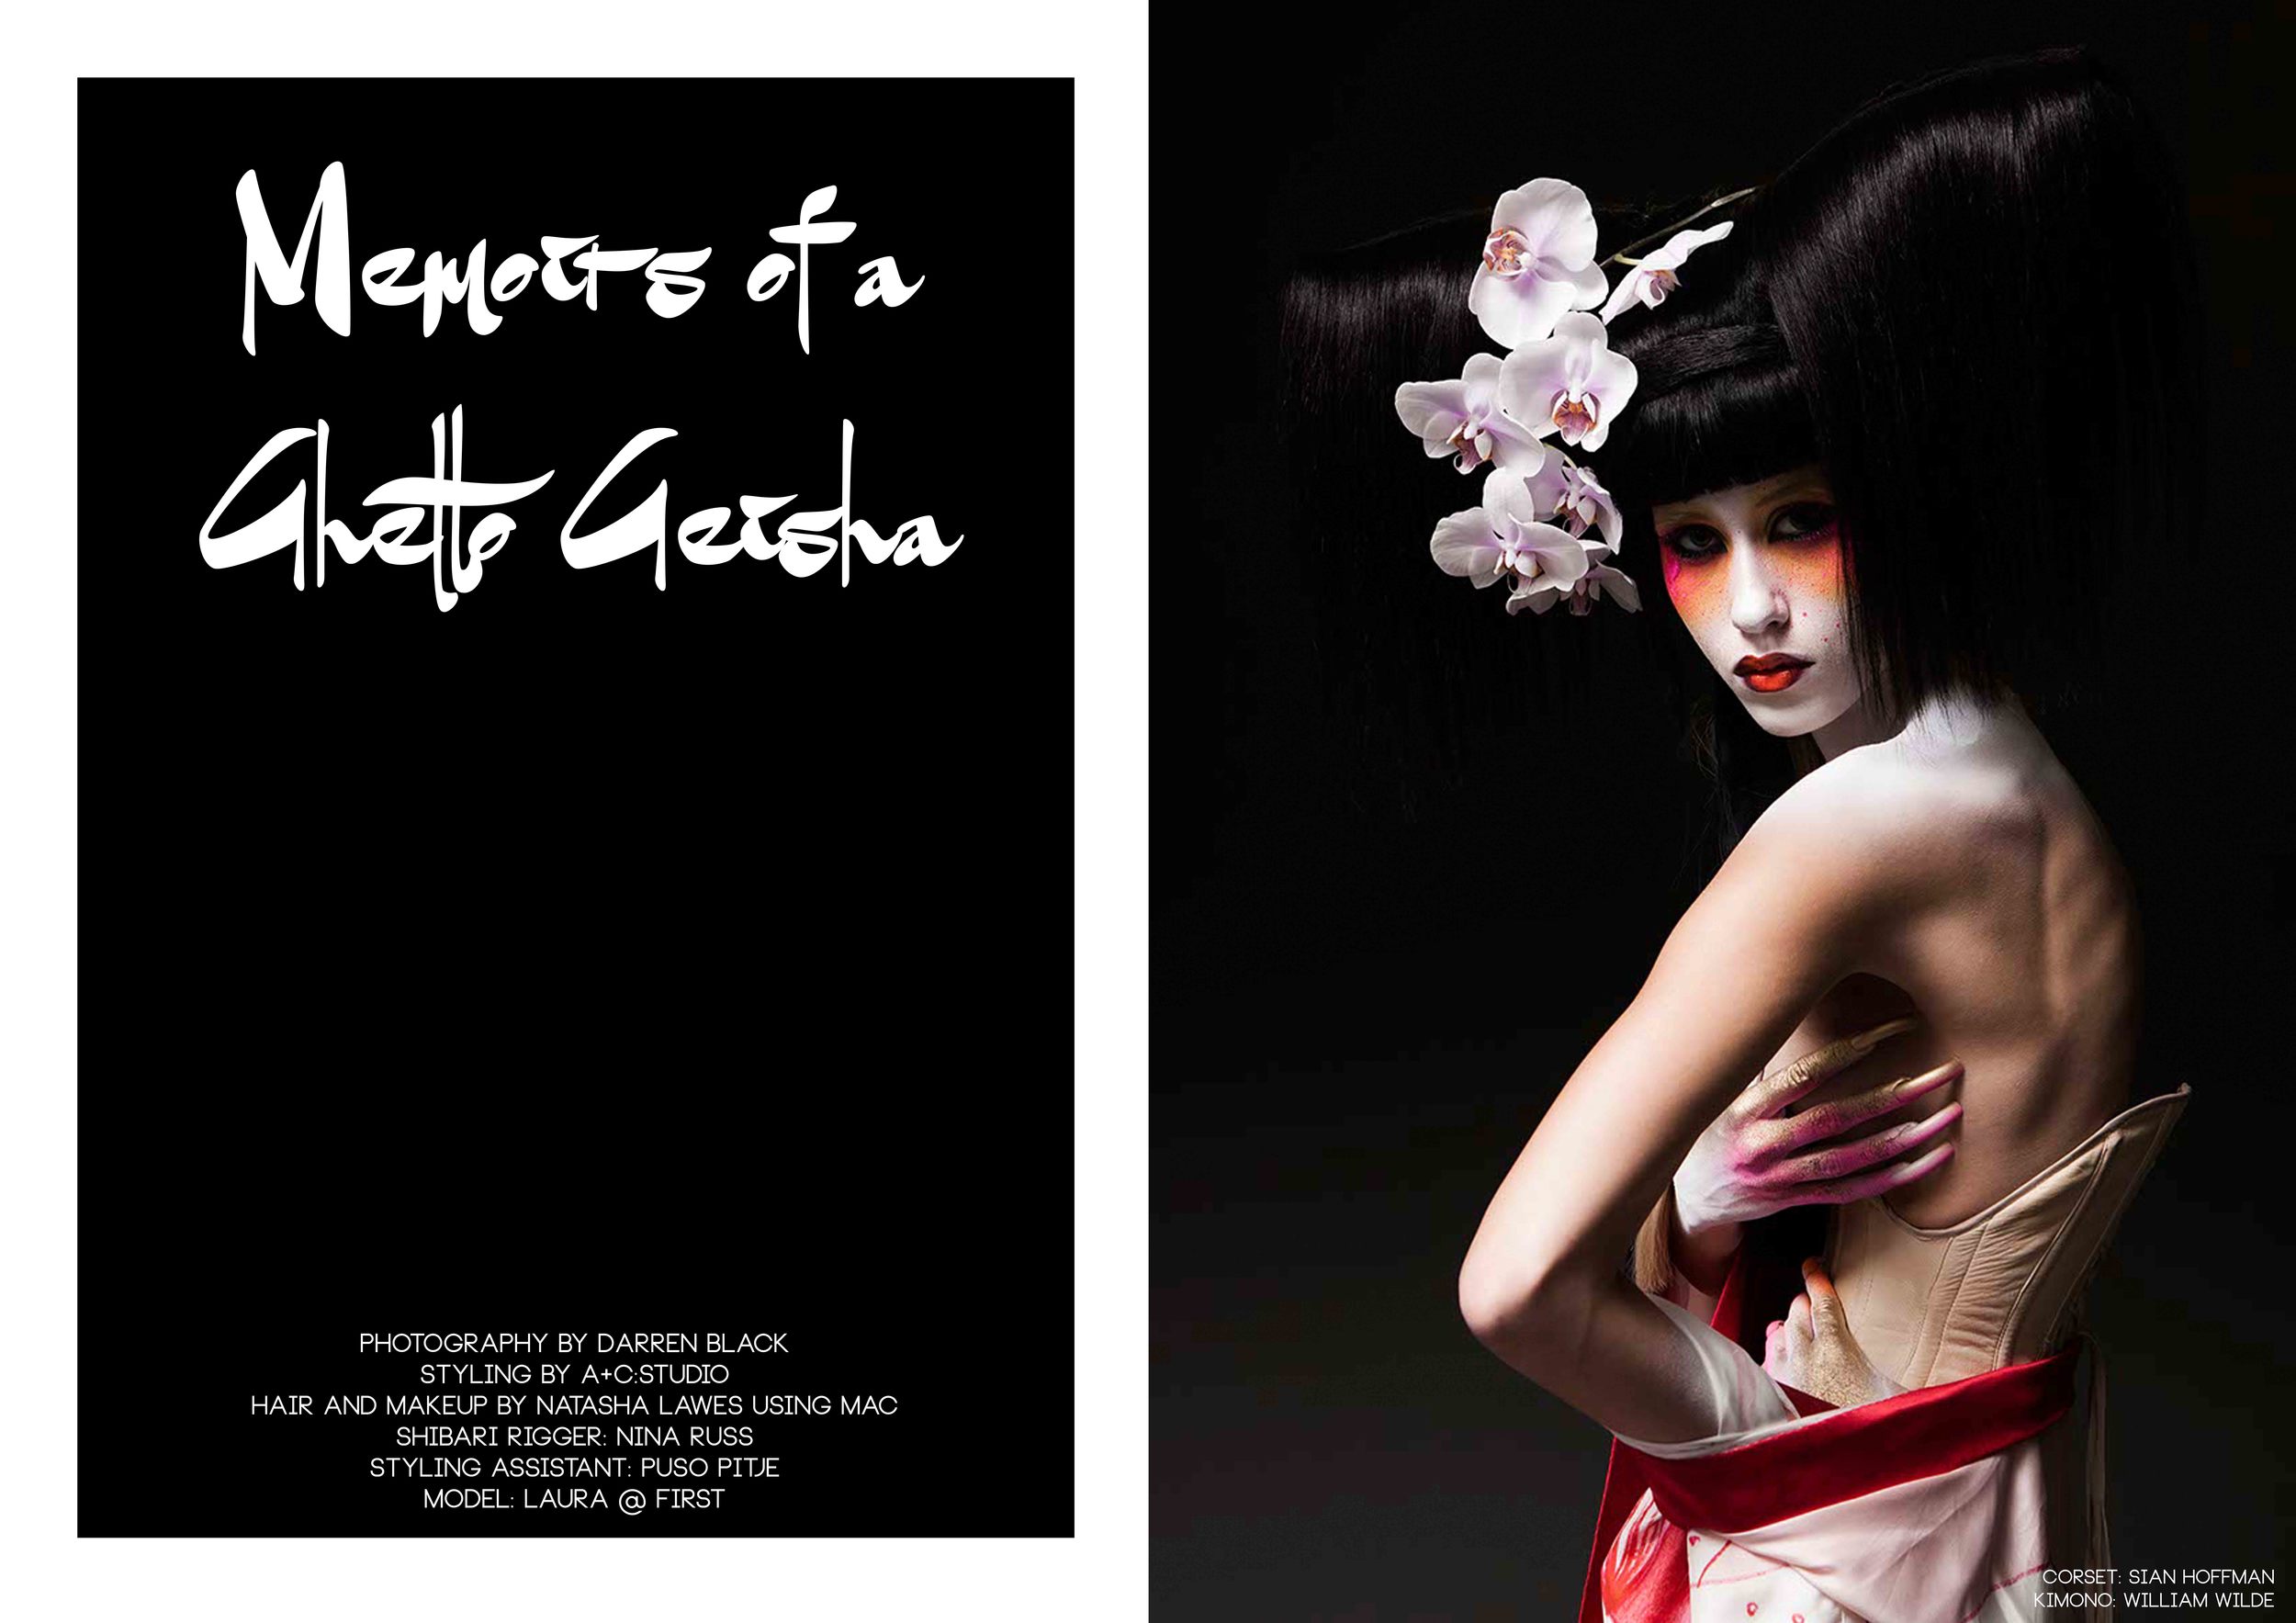 Memoirs of a Ghetto Geisha p.1.jpg